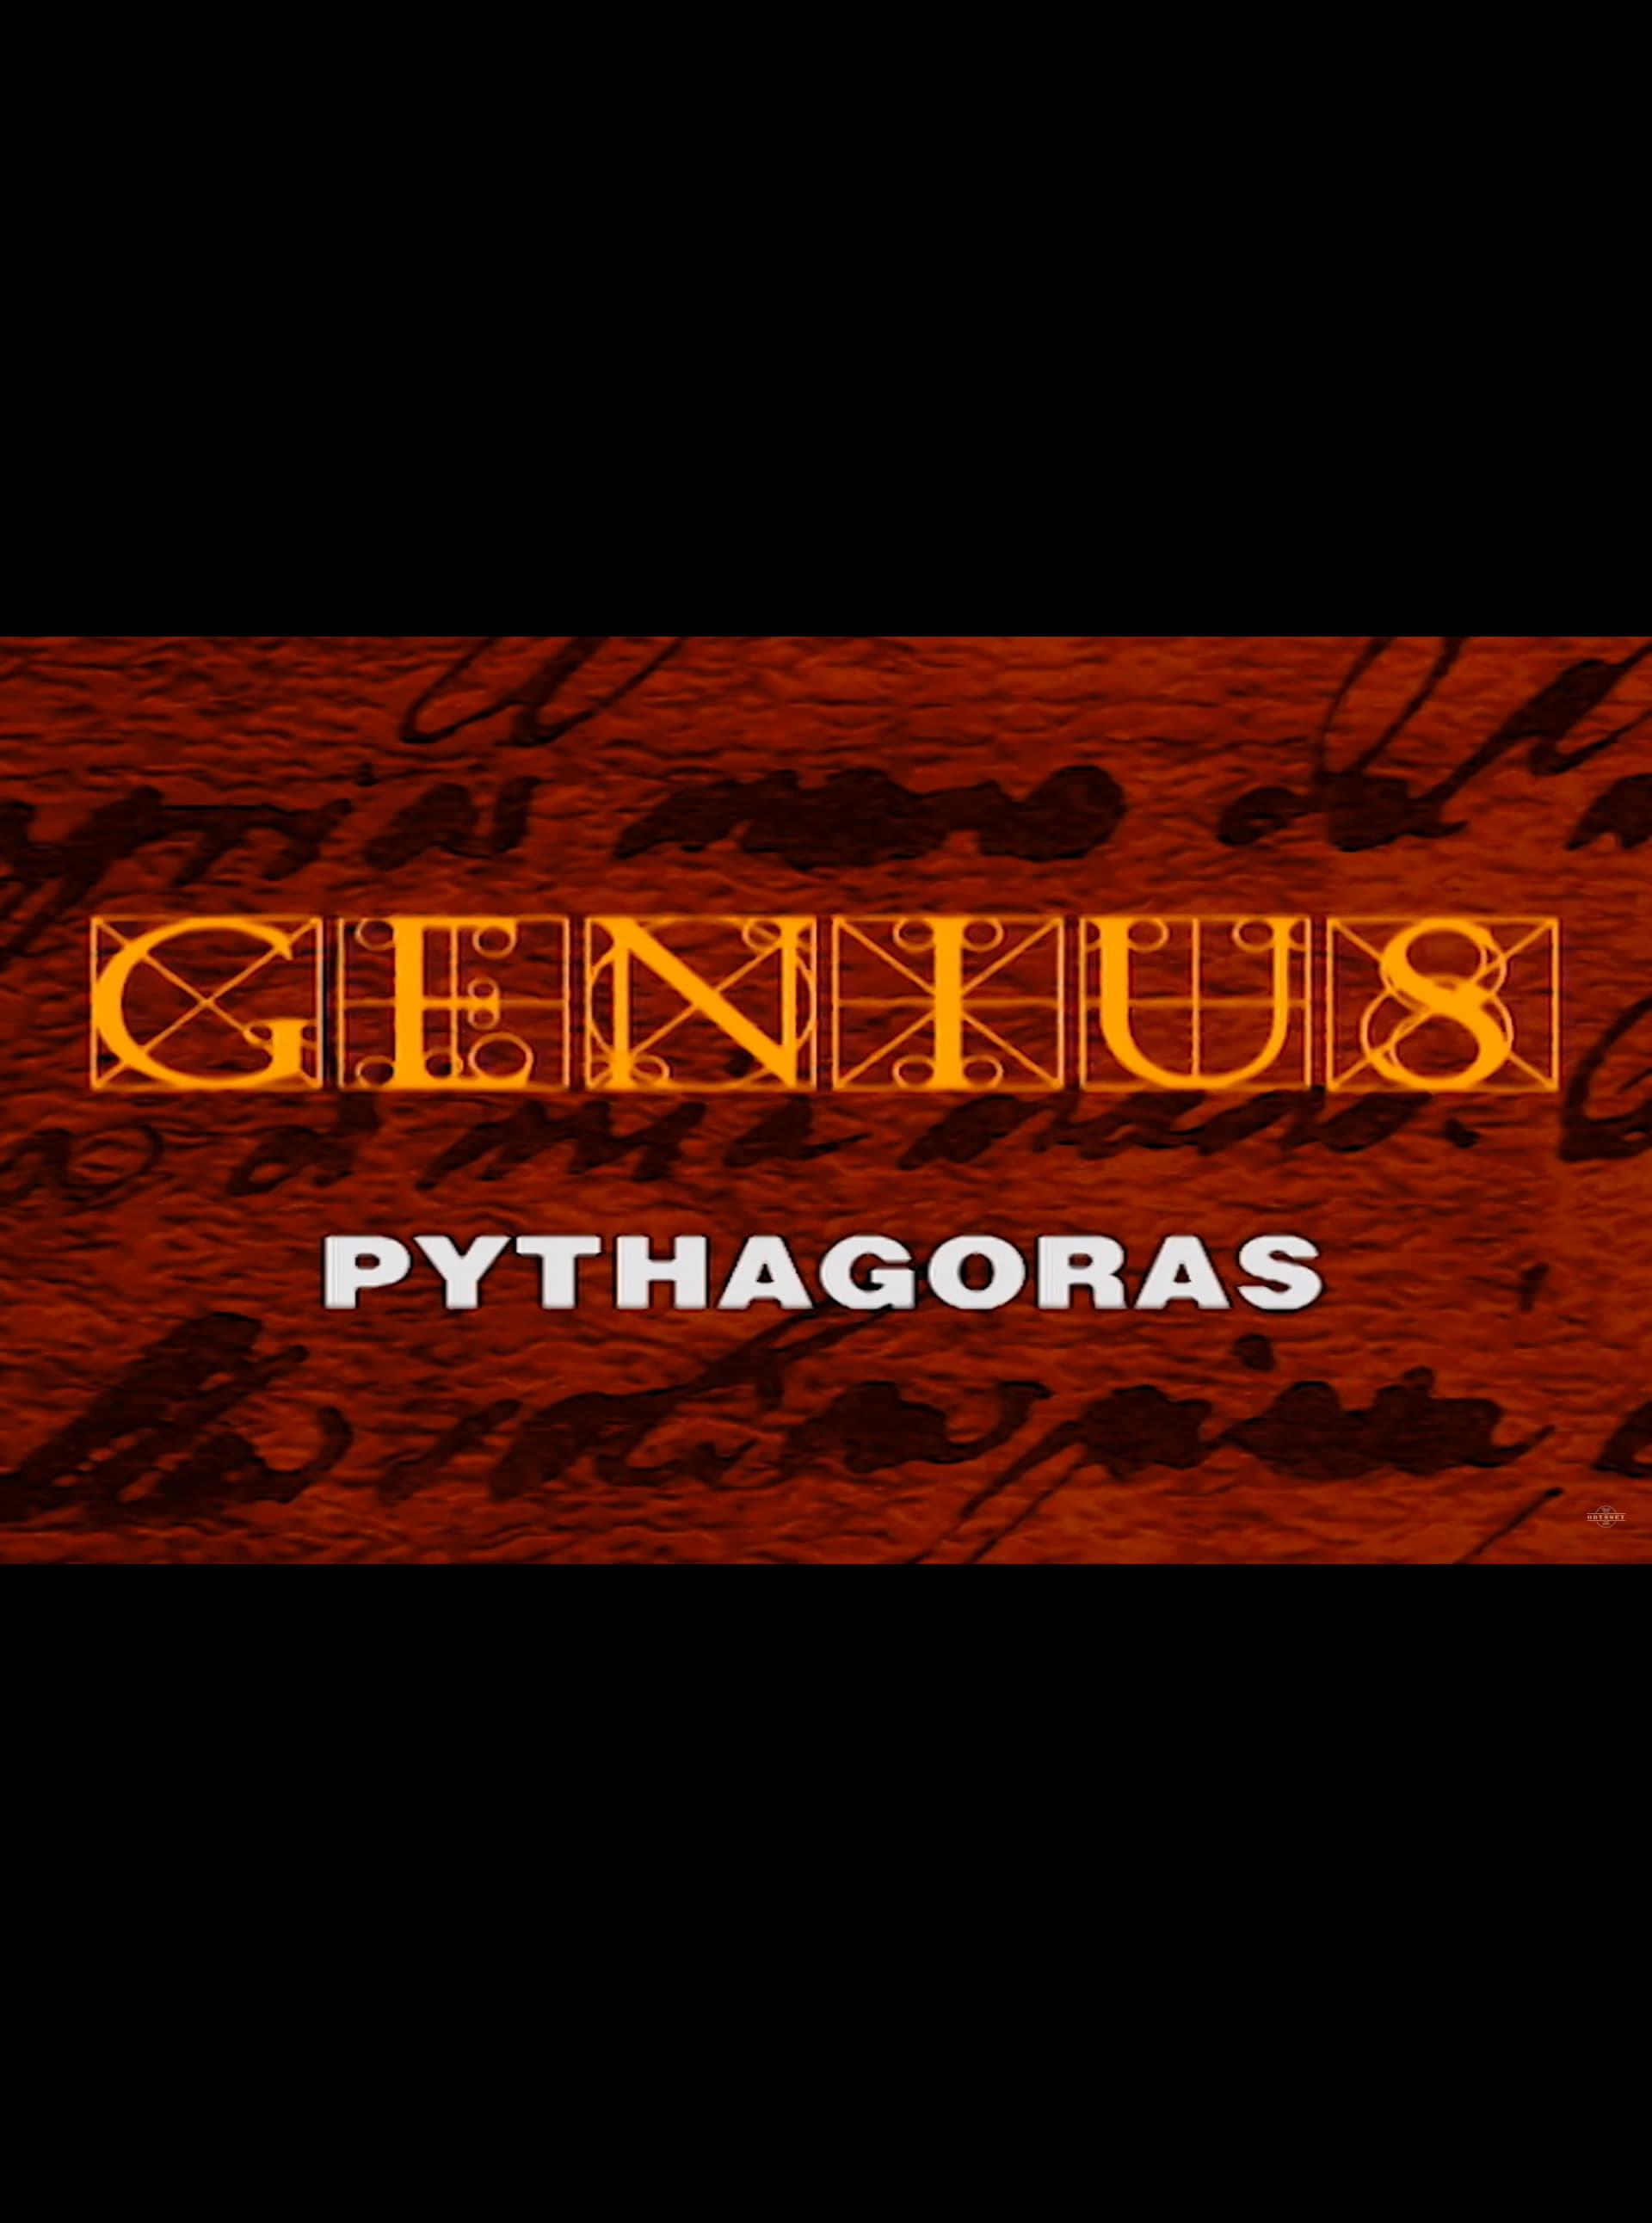 Genius: Pythagoras